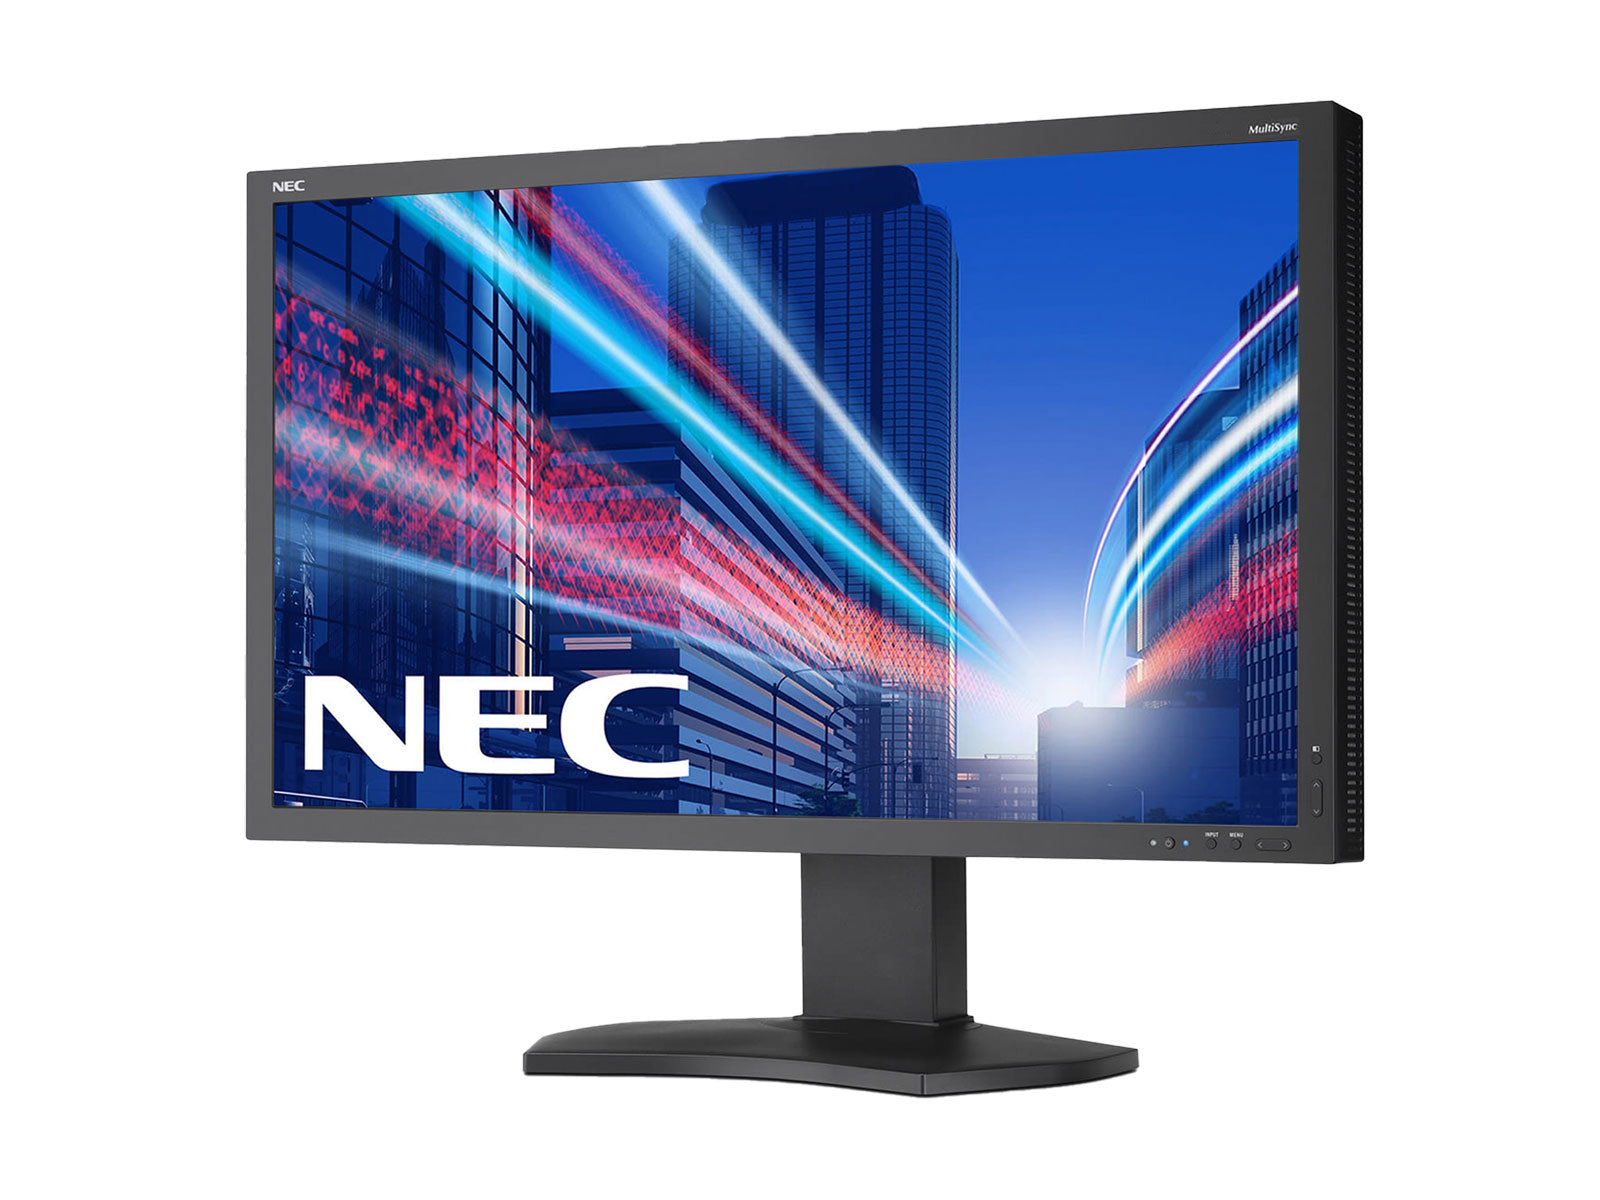 NEC MultiSync PA241W 24 インチ WUXGA 1920 x 1200 ワイドスクリーン プロフェッショナル グラフィック ディスプレイ モニター (PA241W)